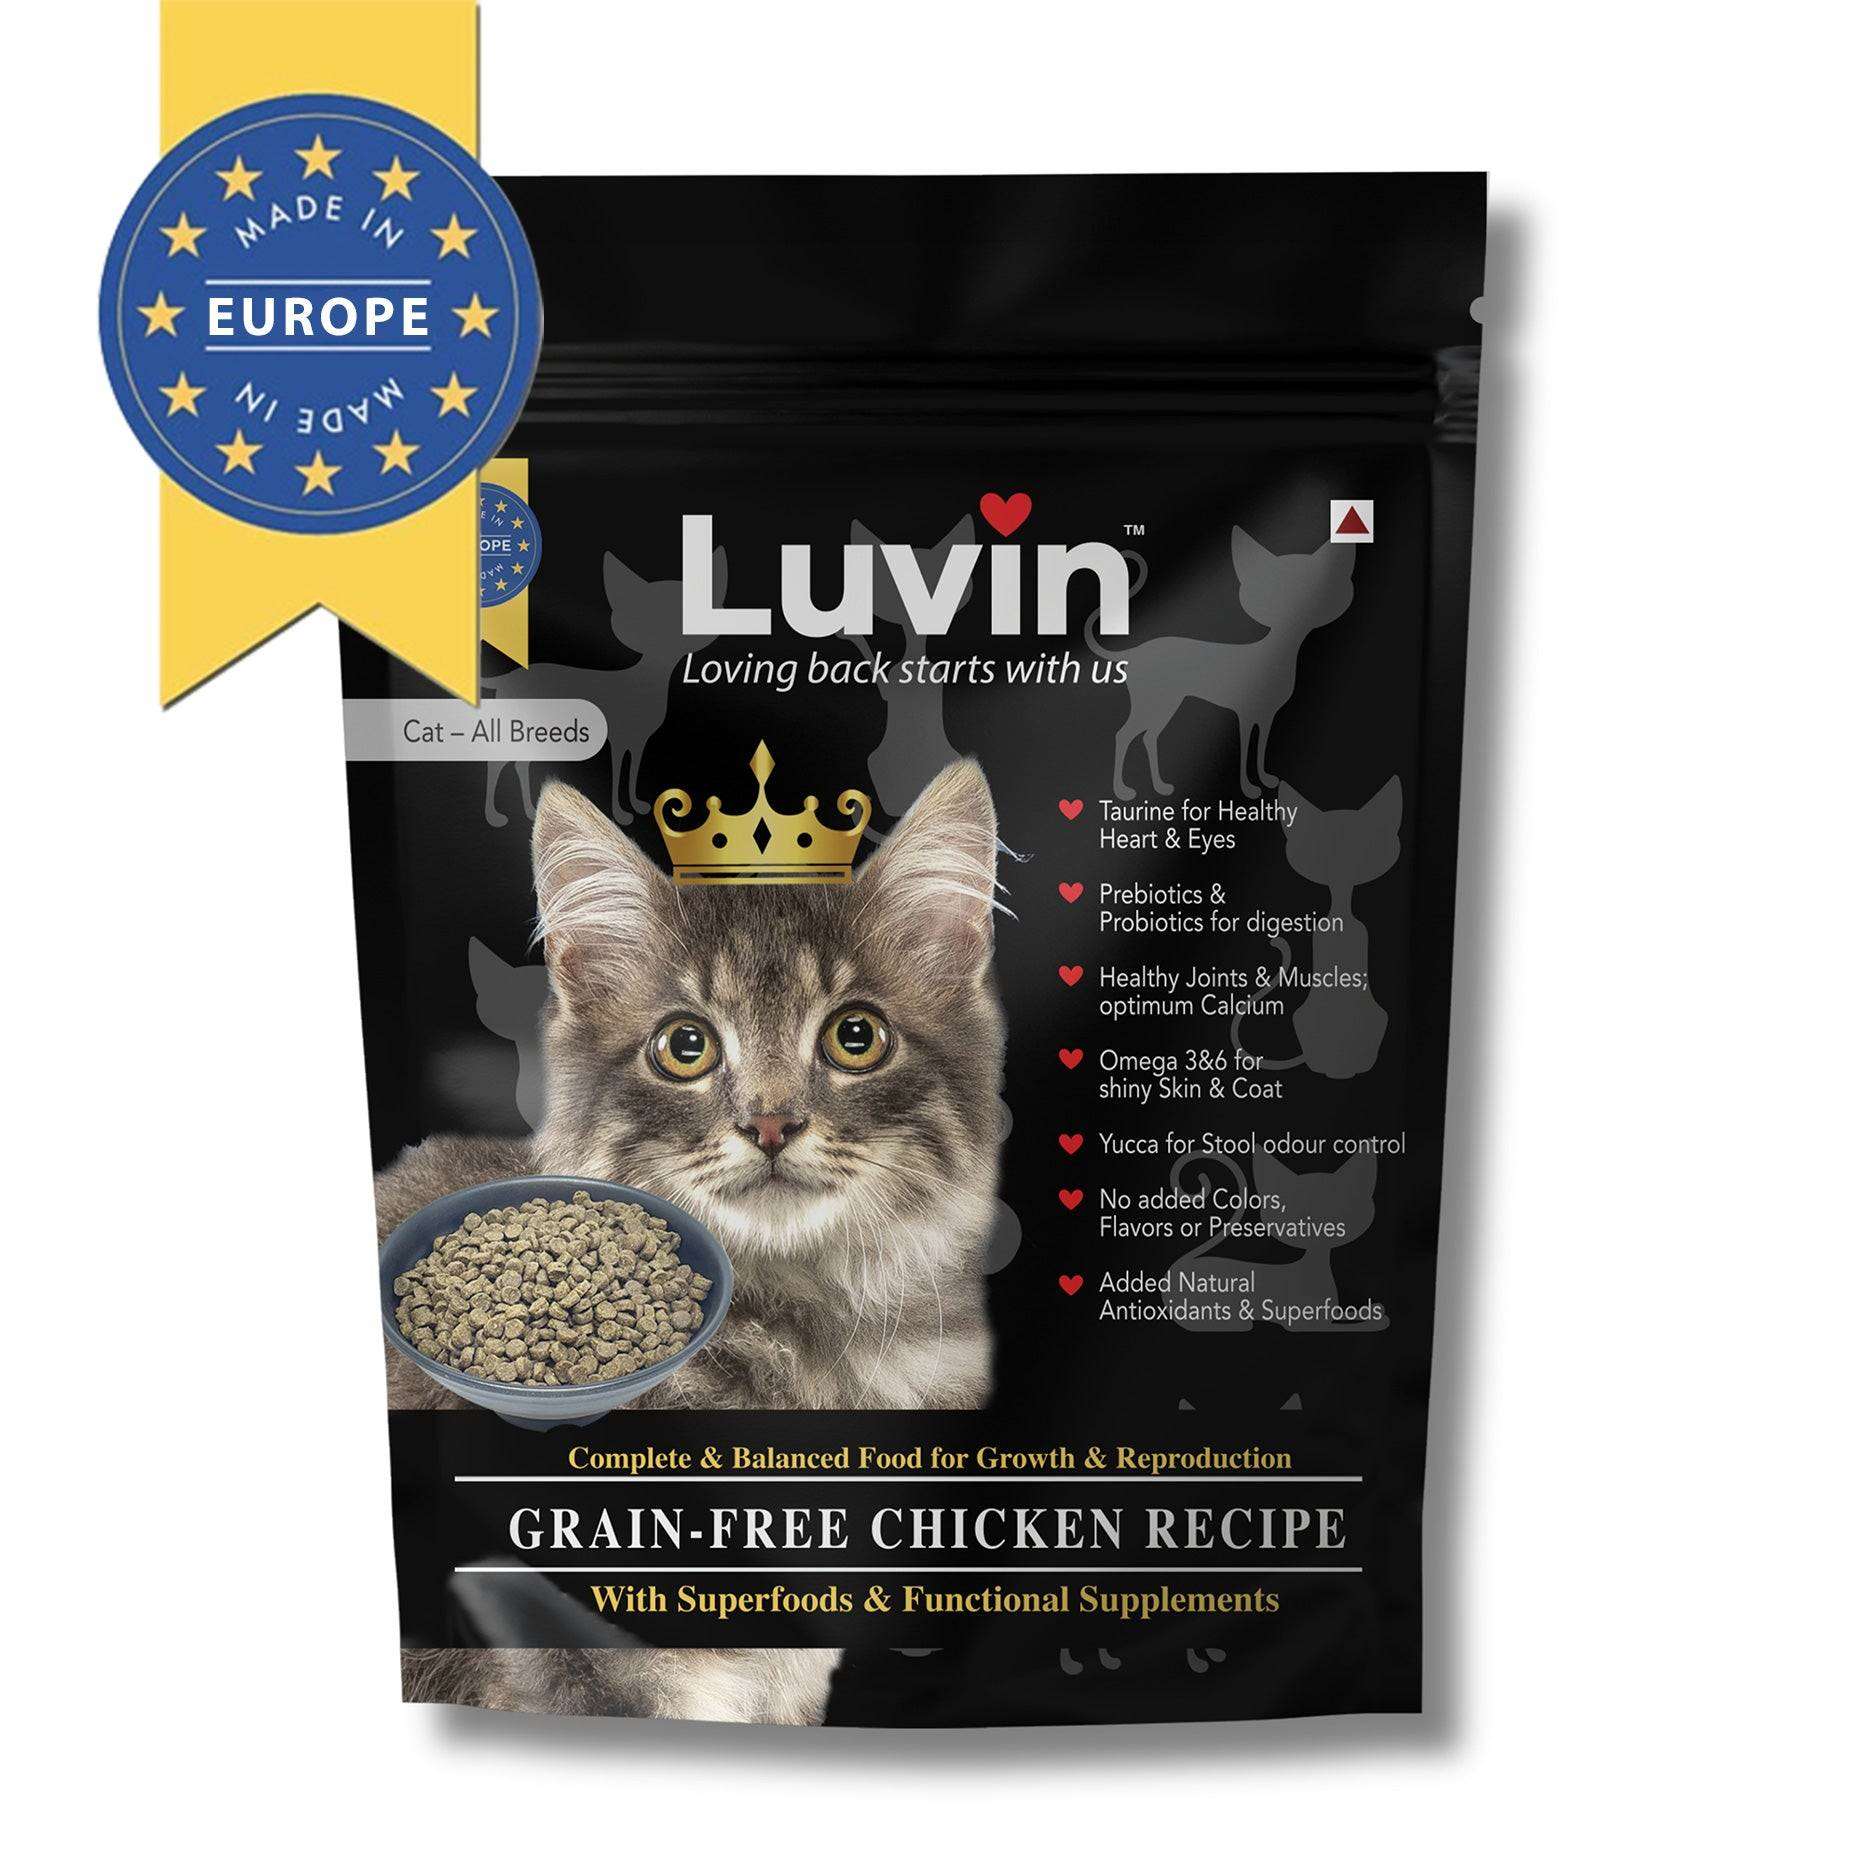 LUVIN Premium Cat Food - luvin